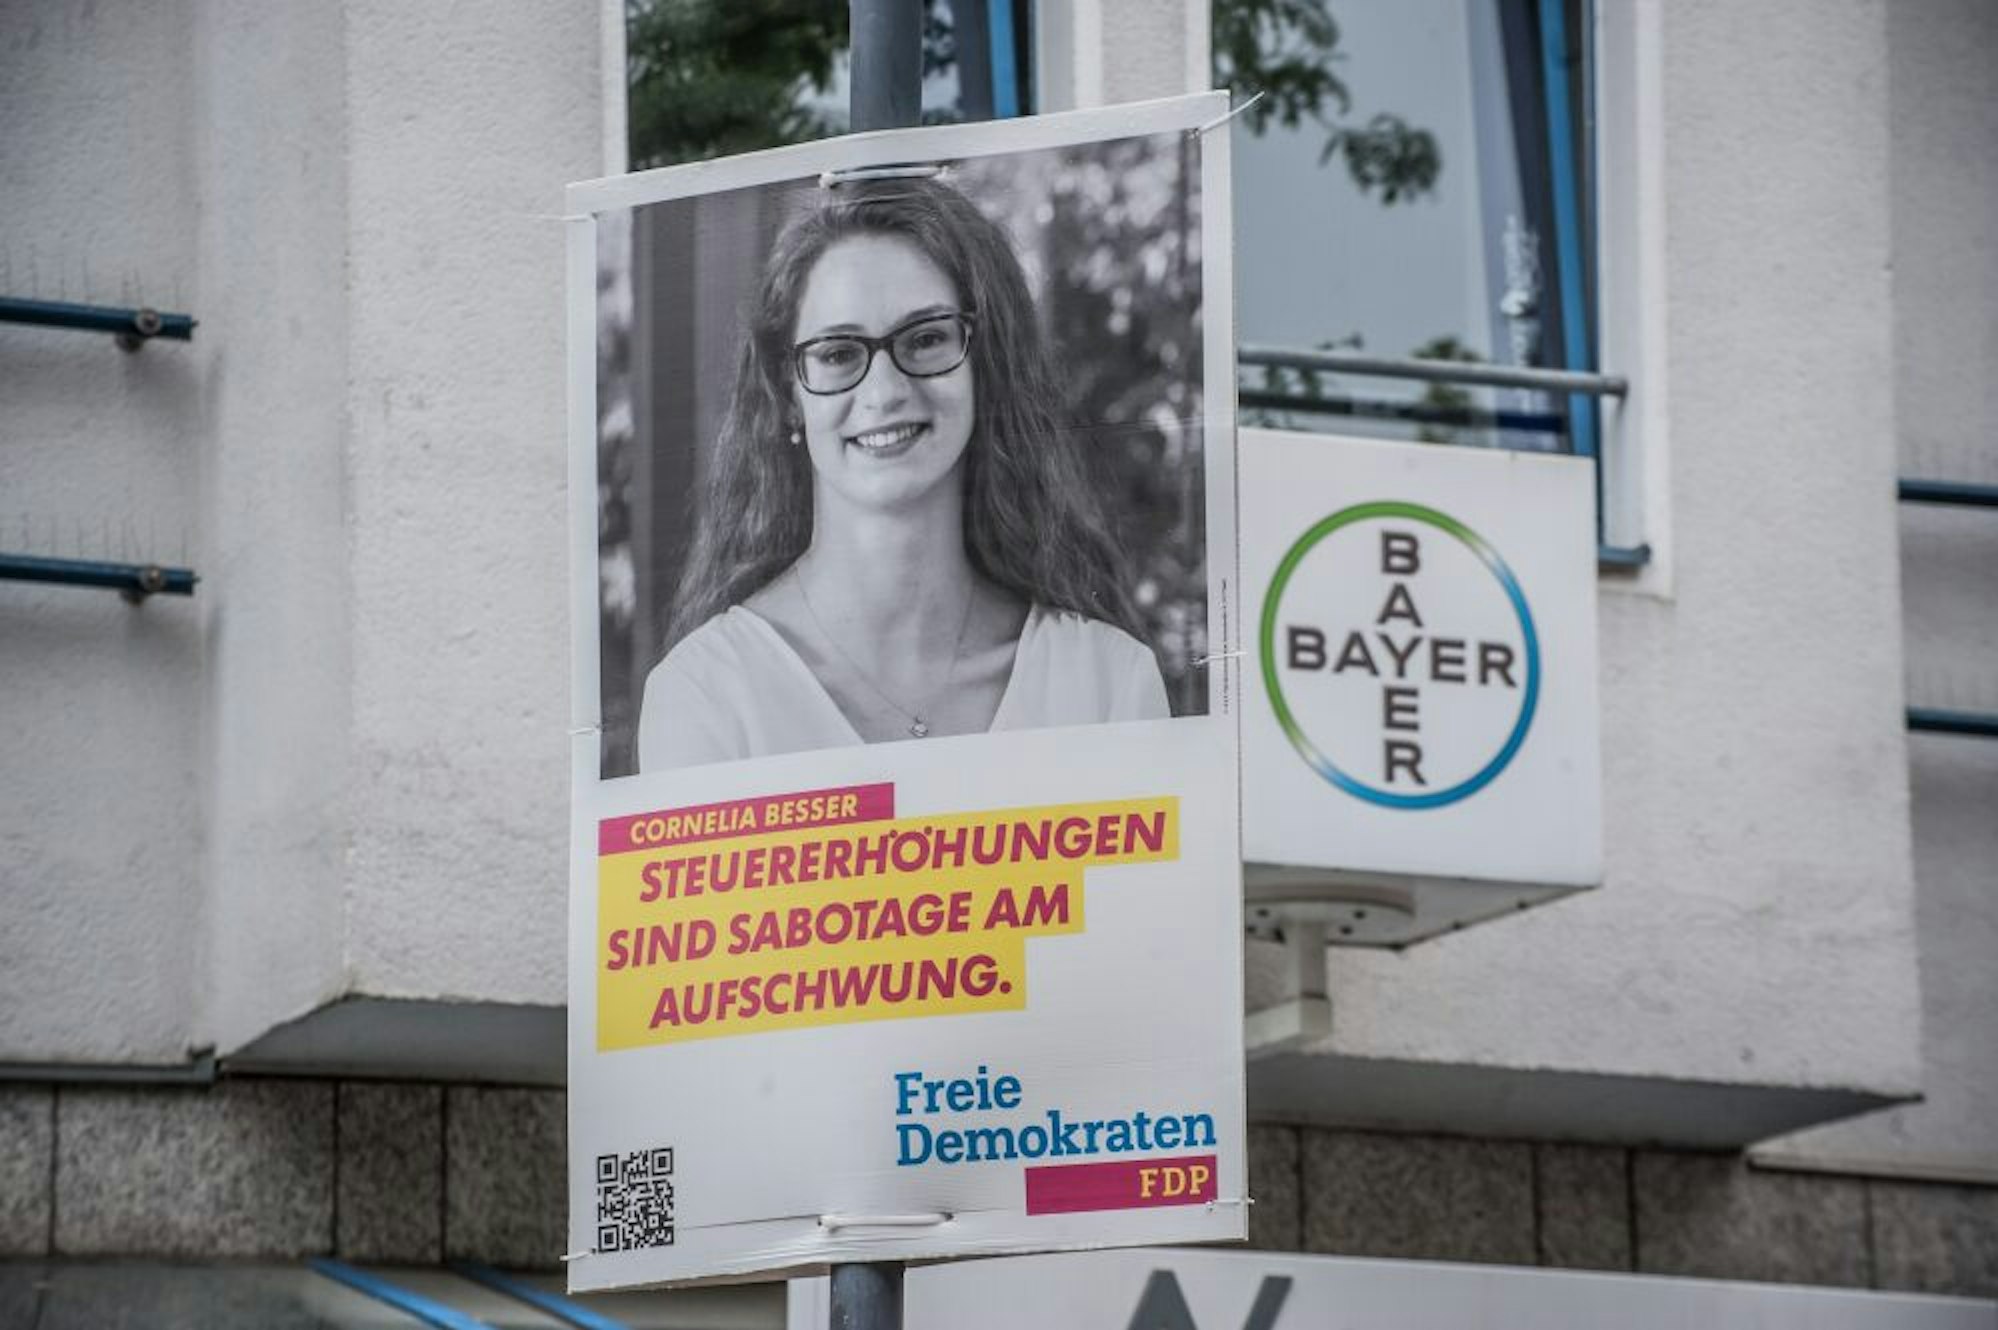 Drei Frauen und ihre Plakate: Cornelia Besser warnt vor Sabotage.